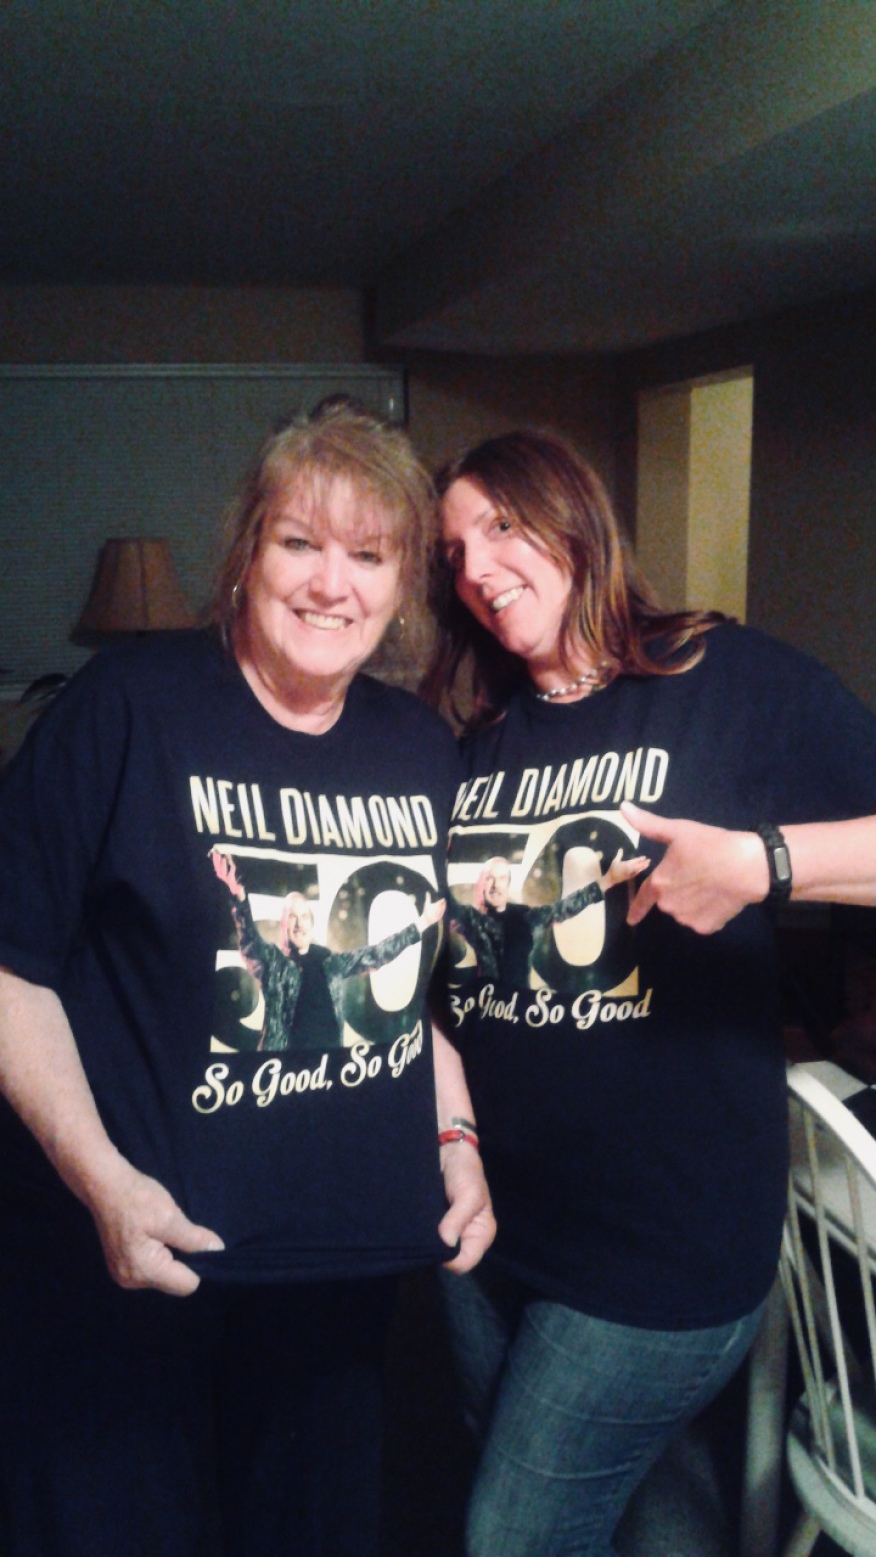 So good, so good! Neil Diamond: 50 years...his final tour